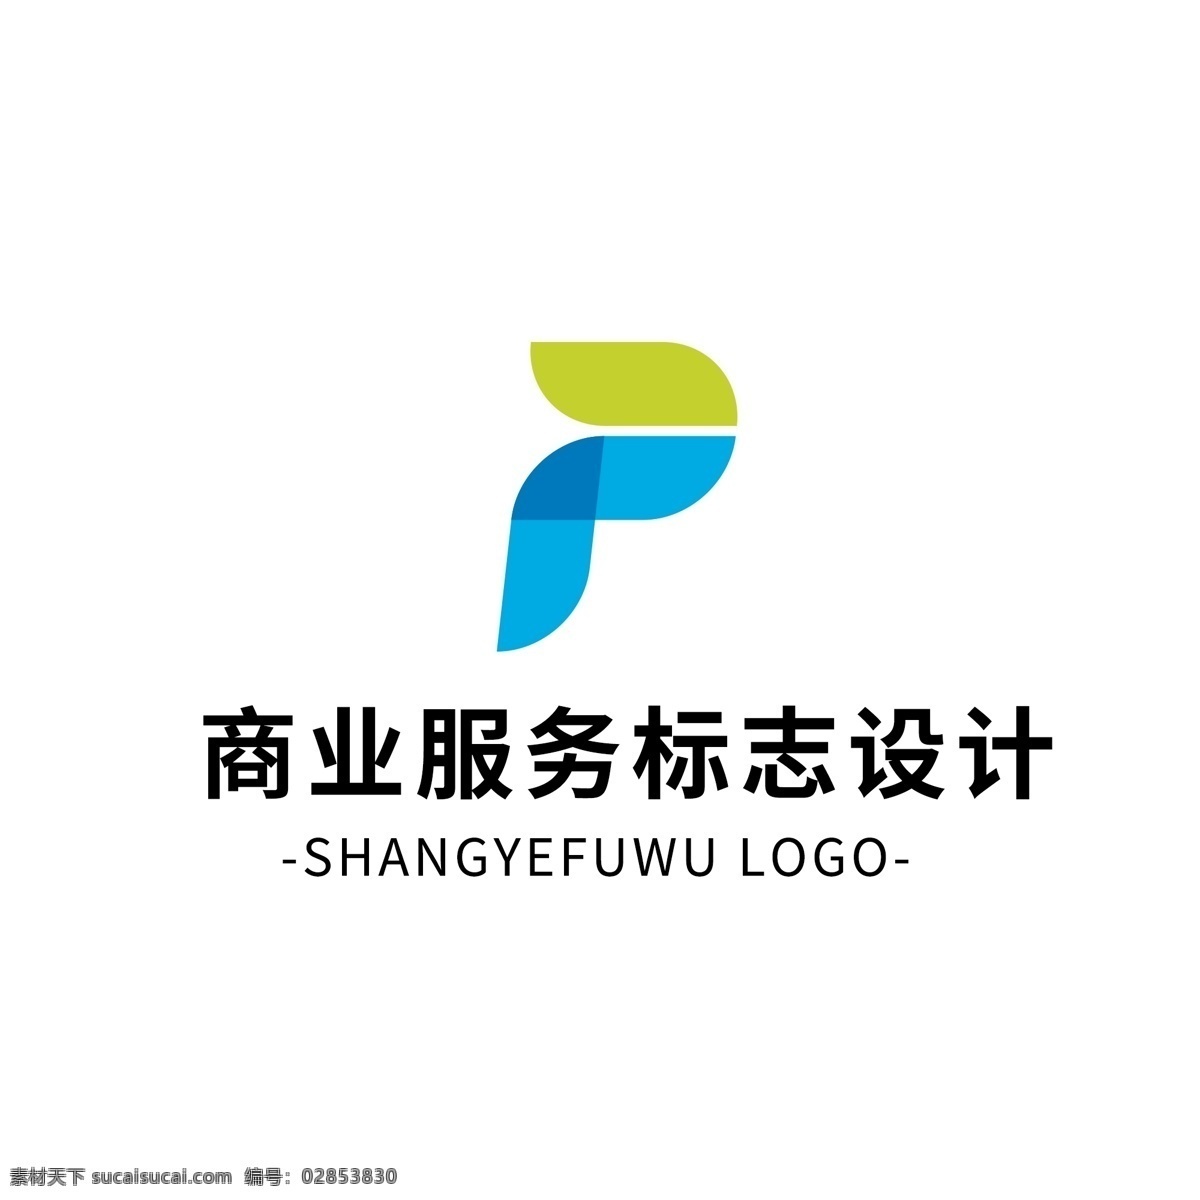 简约 大气 创意 商业服务 logo 标志设计 蓝色 绿色 字母 图形